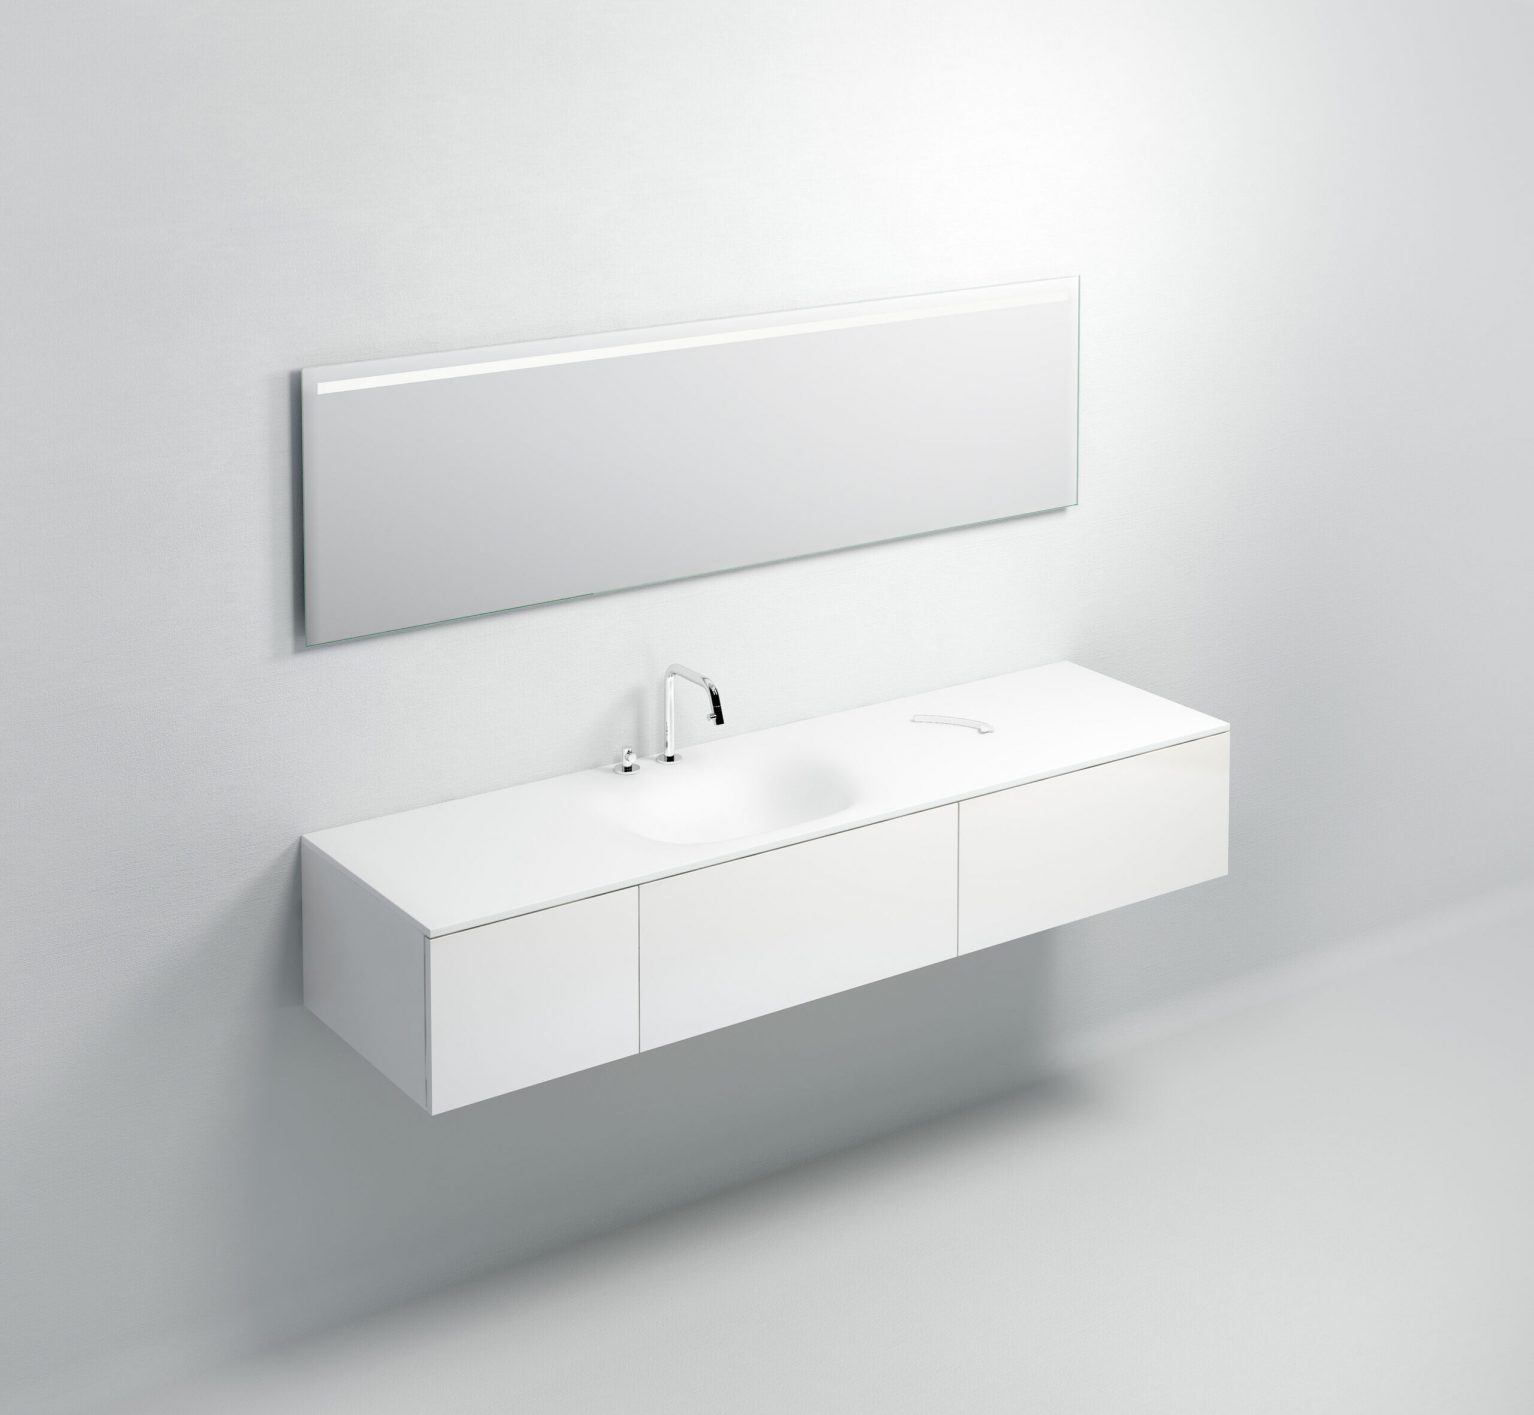 wastafel-wit-toilet-badkamer-luxe-sanitair-Hammock-clou-CL021307327L-aluite-180cm-wasbak-waskom-blad-kraangat-afvoer-waterstop-shadow-Sp